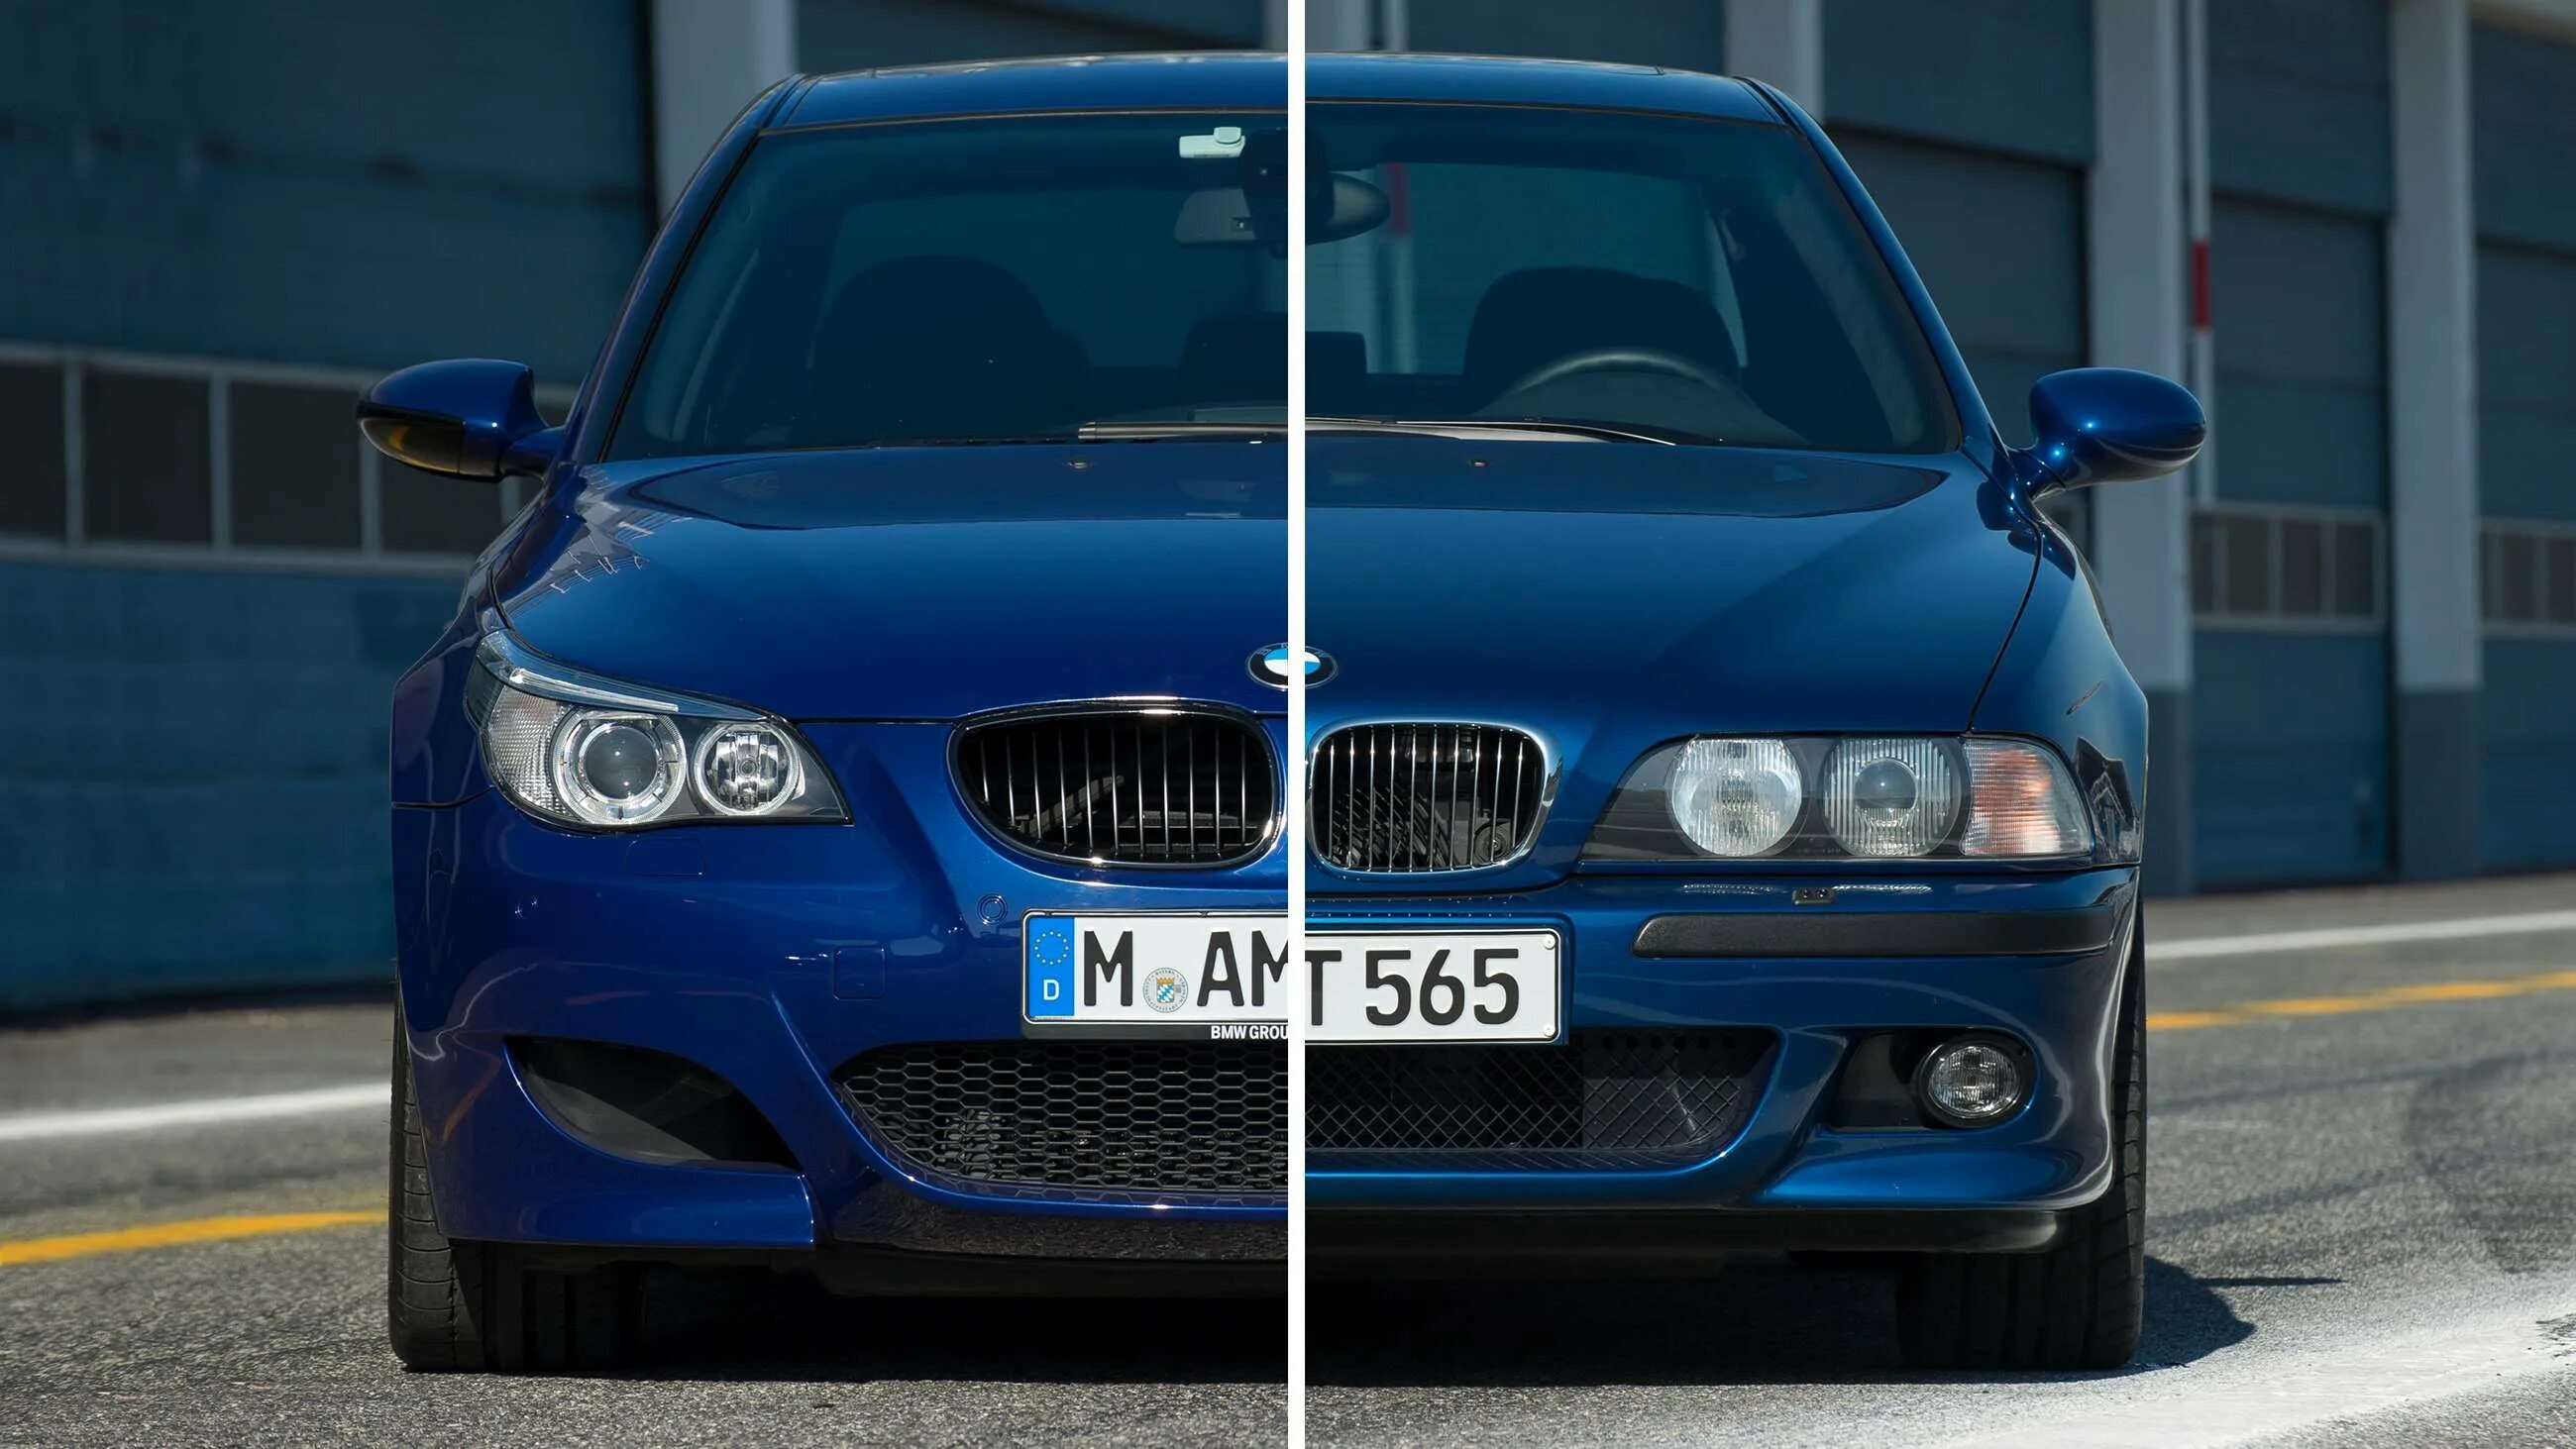 BMW m5 39. БМВ м5 е39. BMW m5 e39. БМВ м5 е39 синяя.